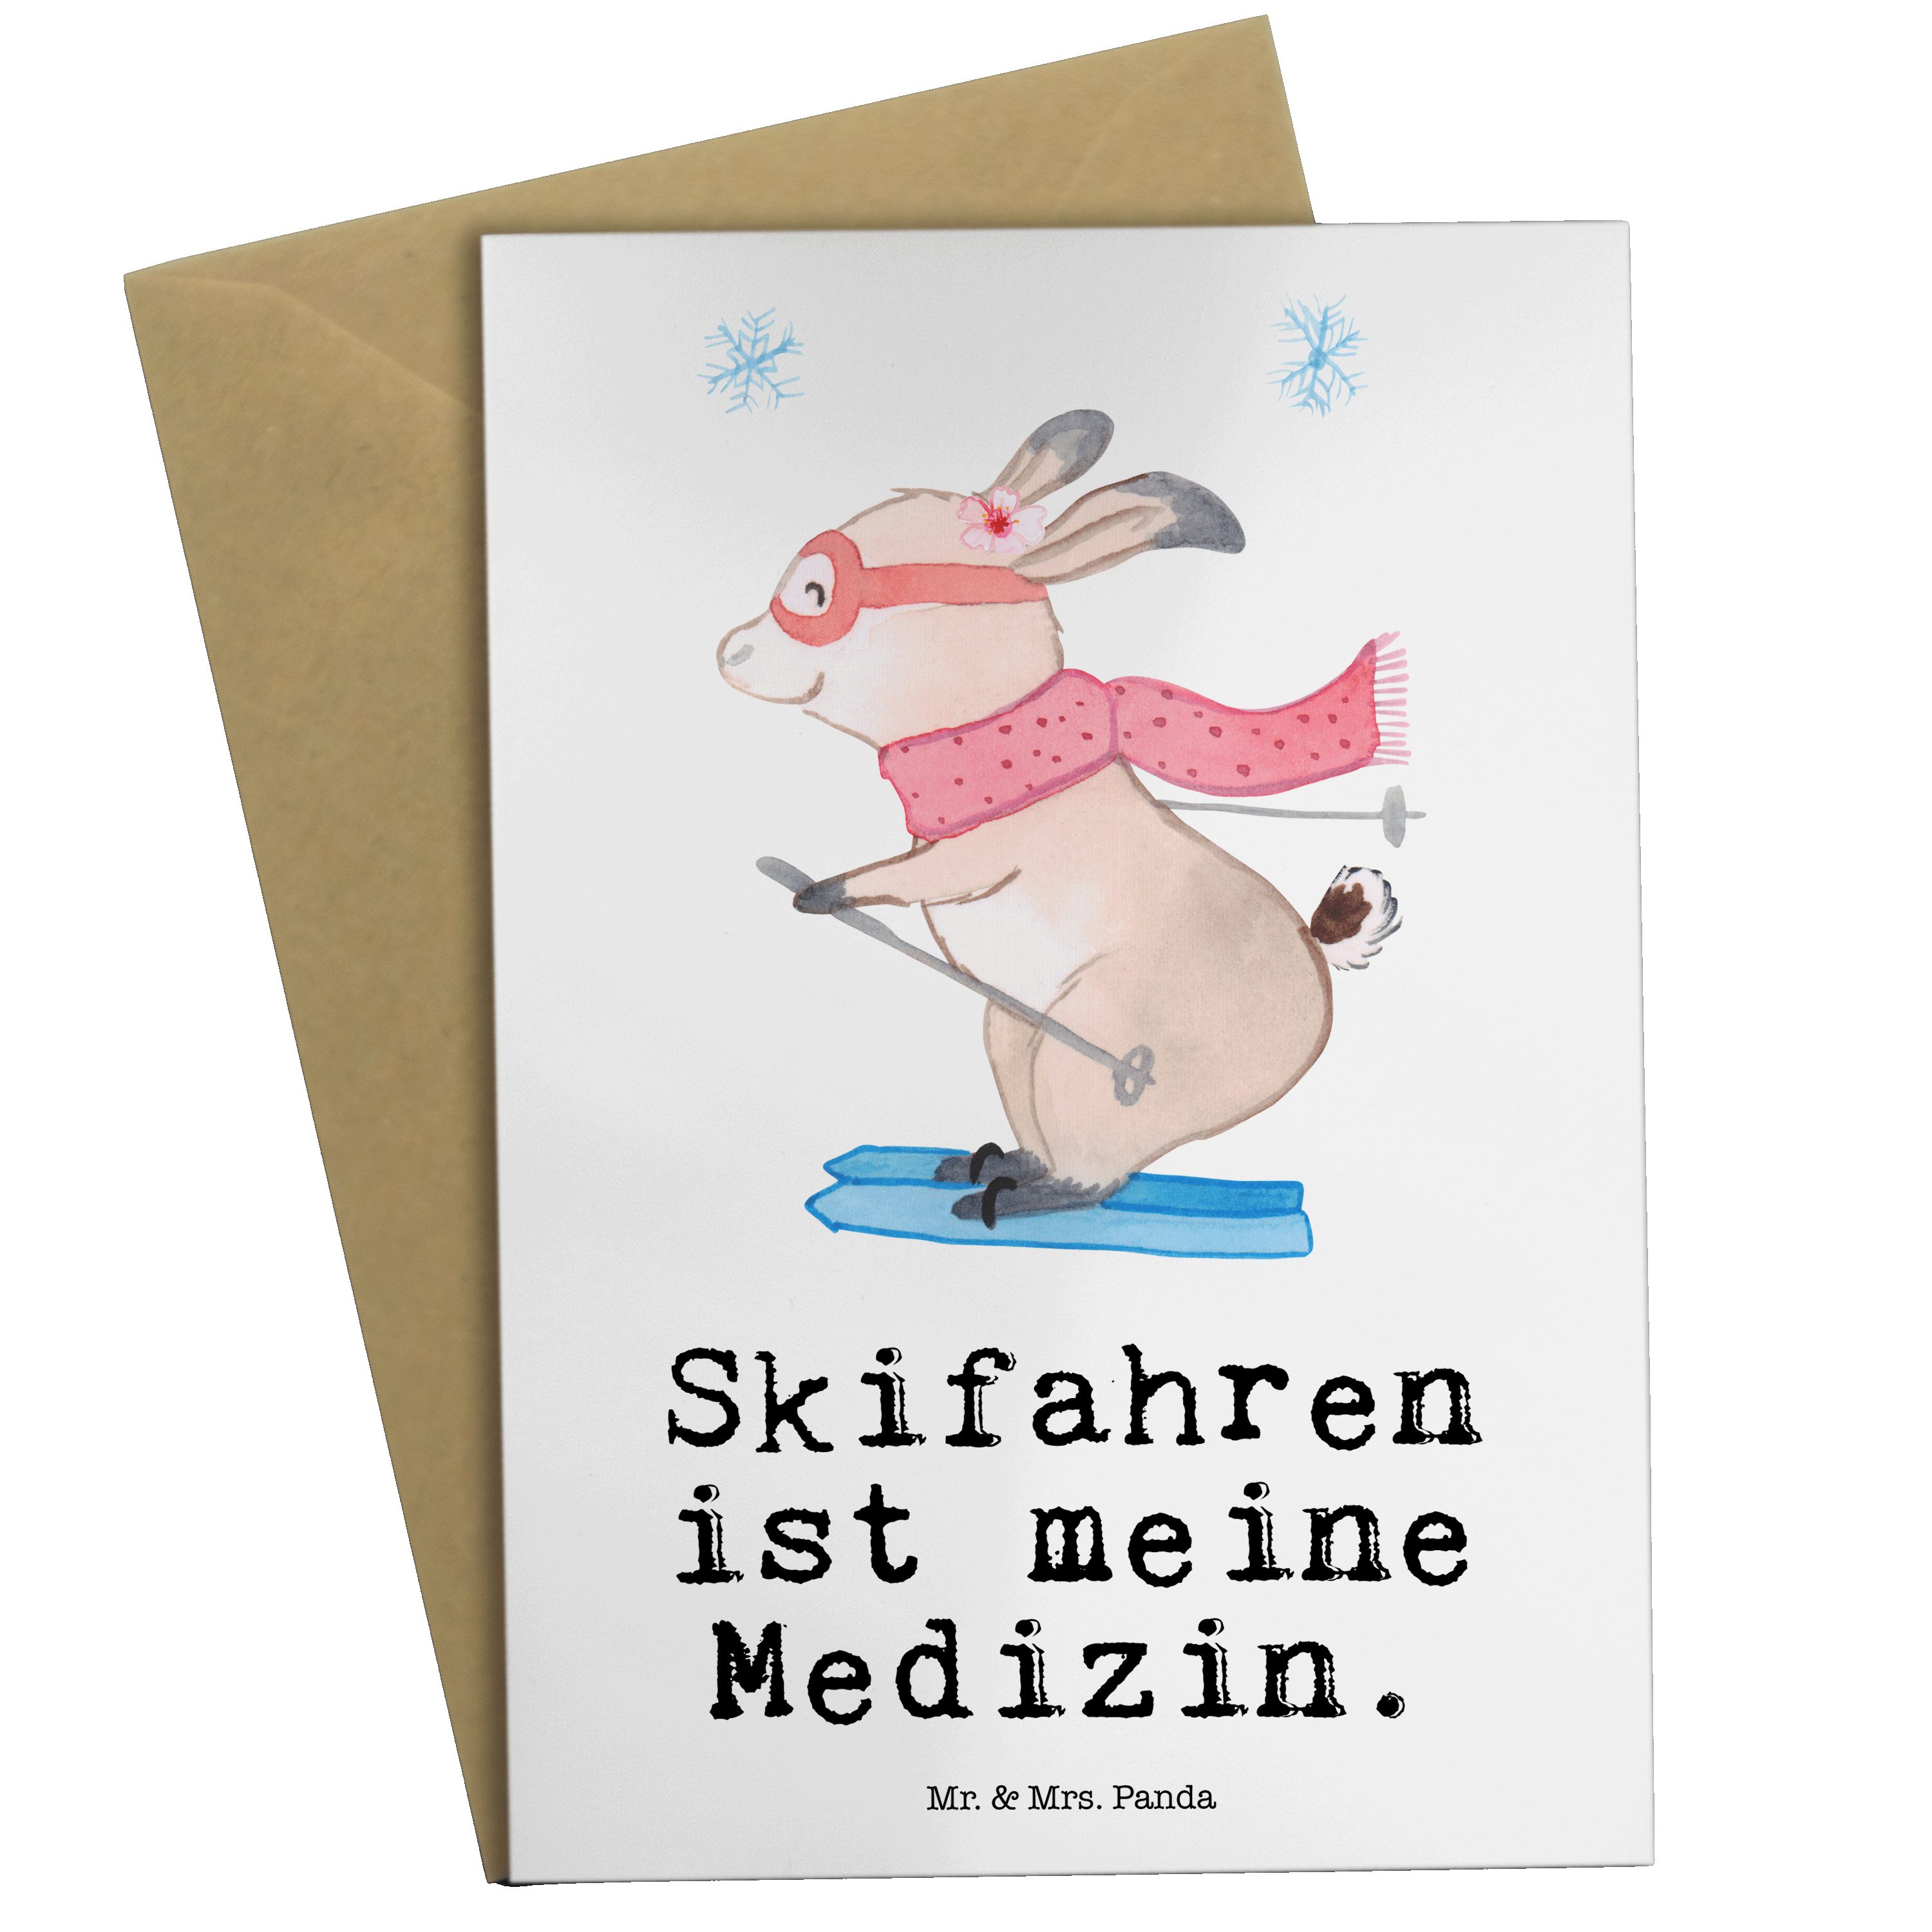 Mr. & Mrs. Panda Grußkarte Bär Skifahren Medizin - Weiß - Geschenk, Hobby, Ski fahren, Karte, Sk